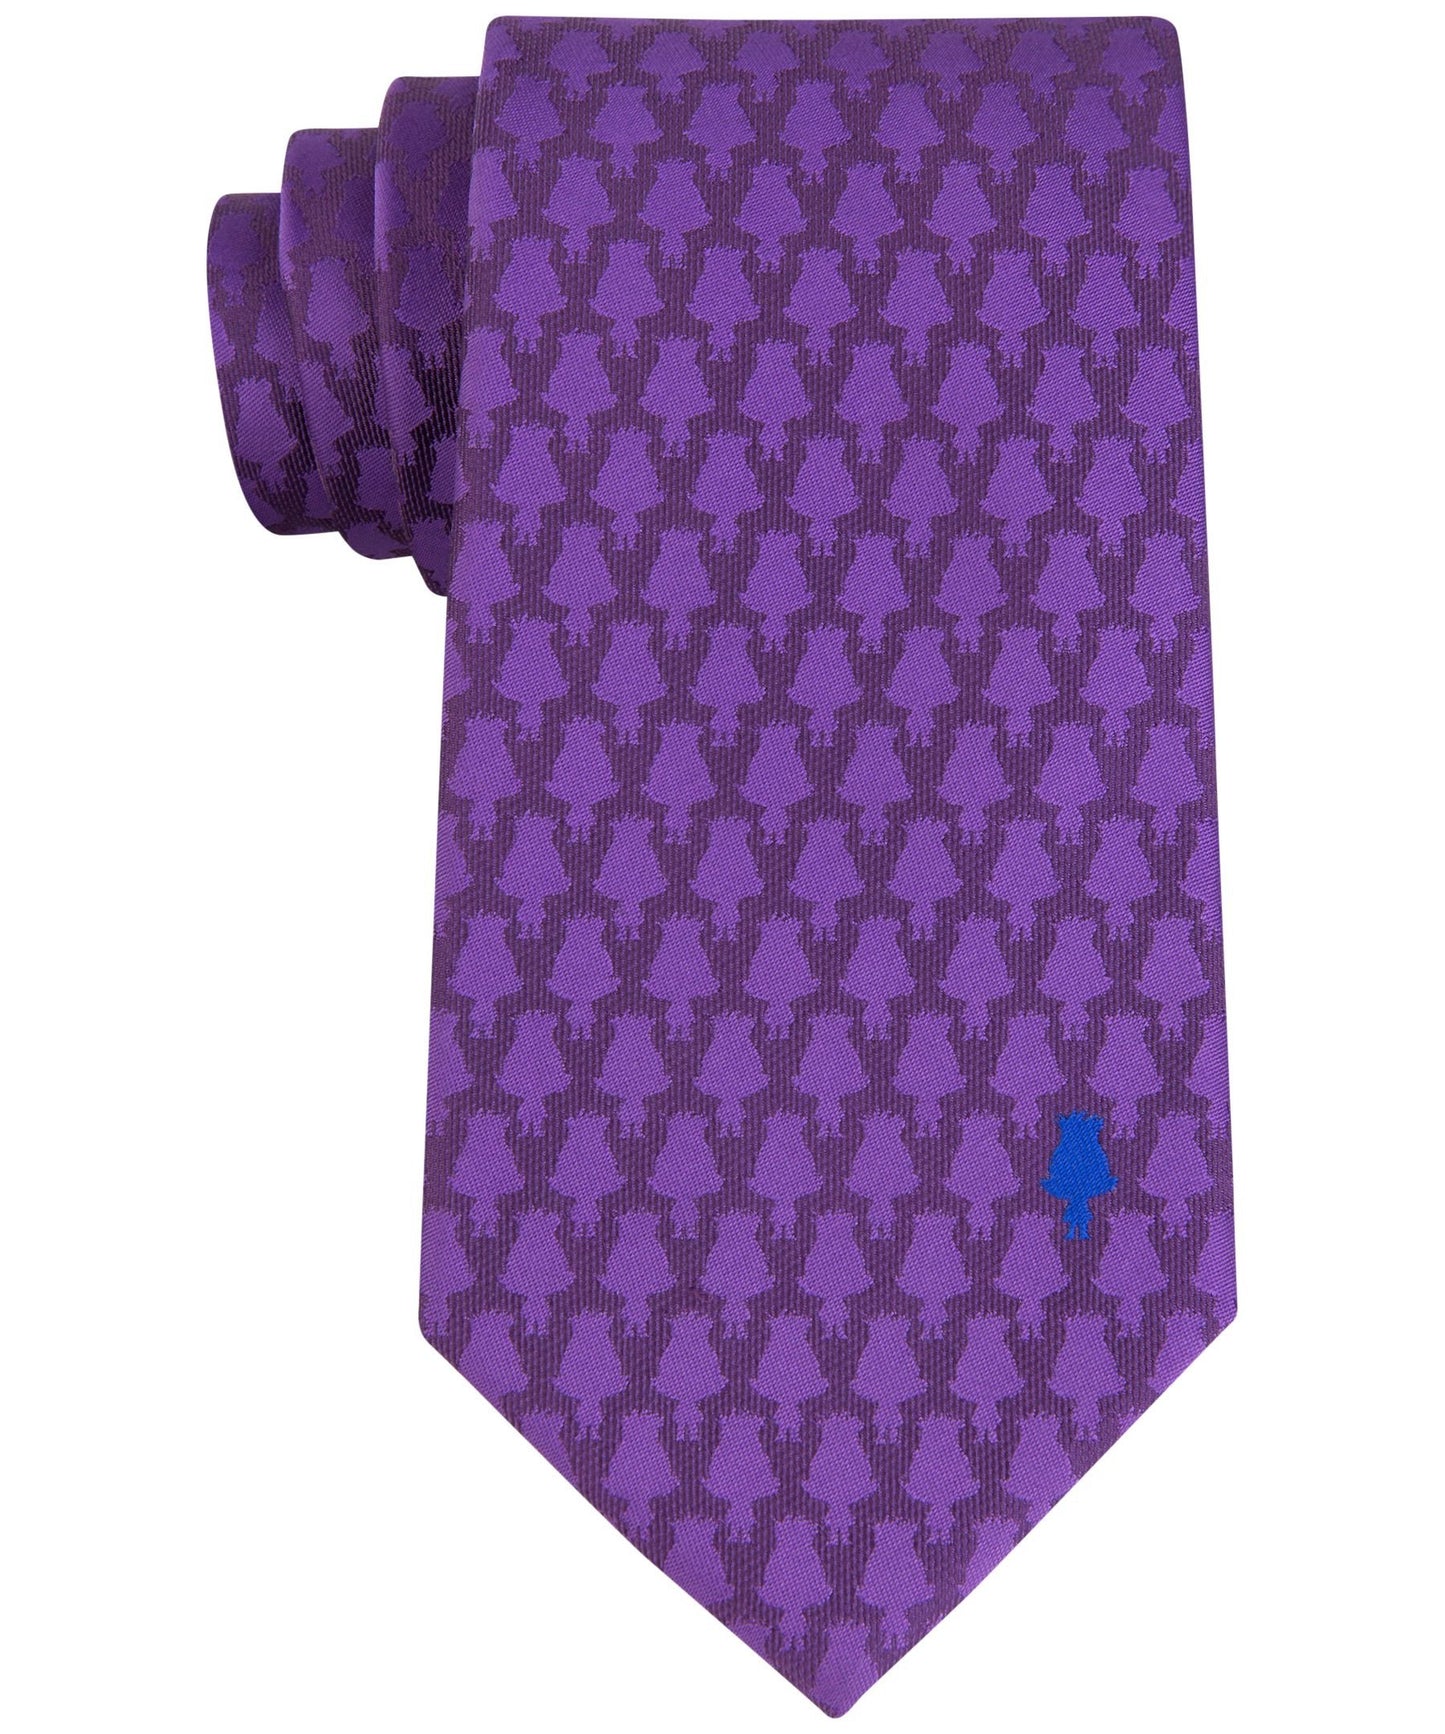 DreamWorks Trolls Purple/Blue Branch Silhouette Panel Necktie